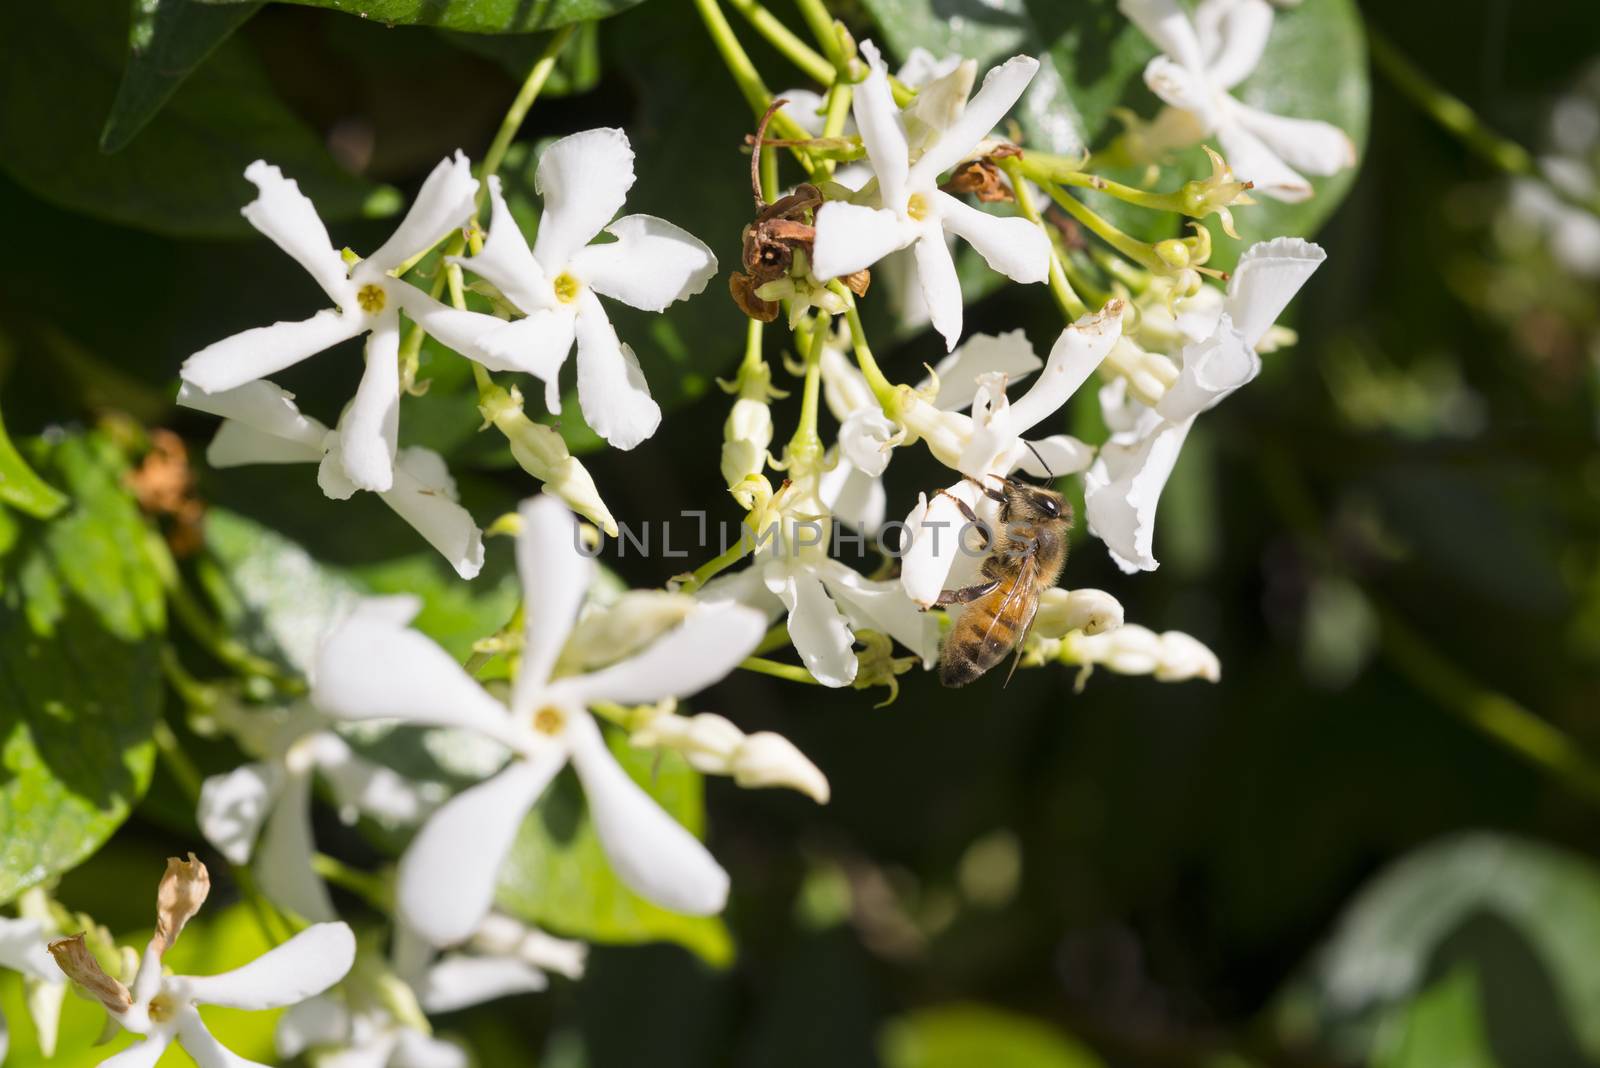 Western honey bee or European honey bee (Apis mellifera) on flow by Njean